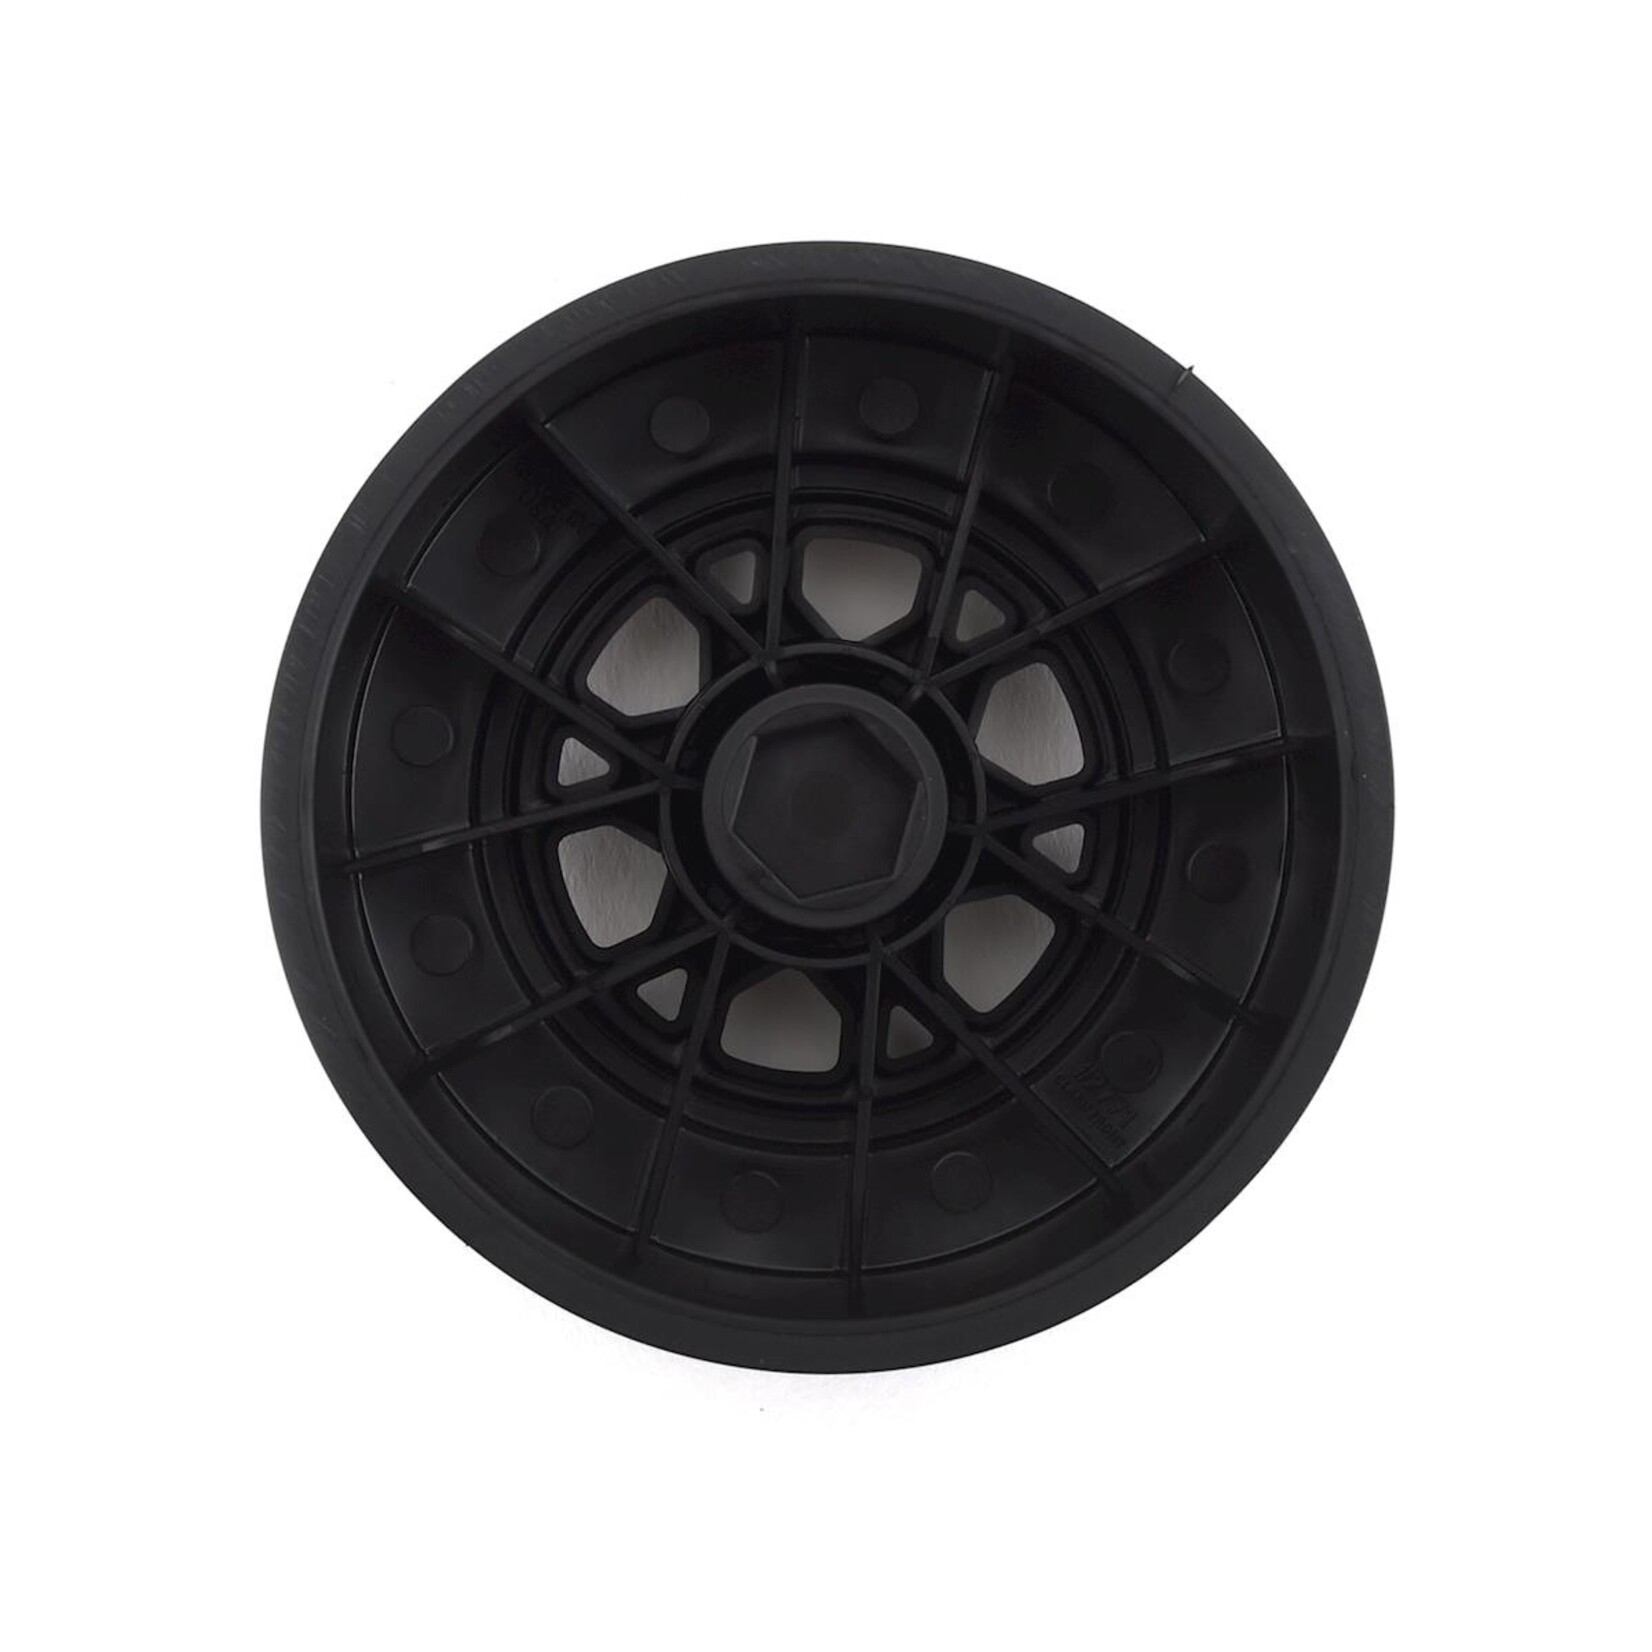 Pro-Line Pro-Line Impulse 2.2"/3.0" Slash Front Wheels (2) (Black) w/12mm Hex #2771-03